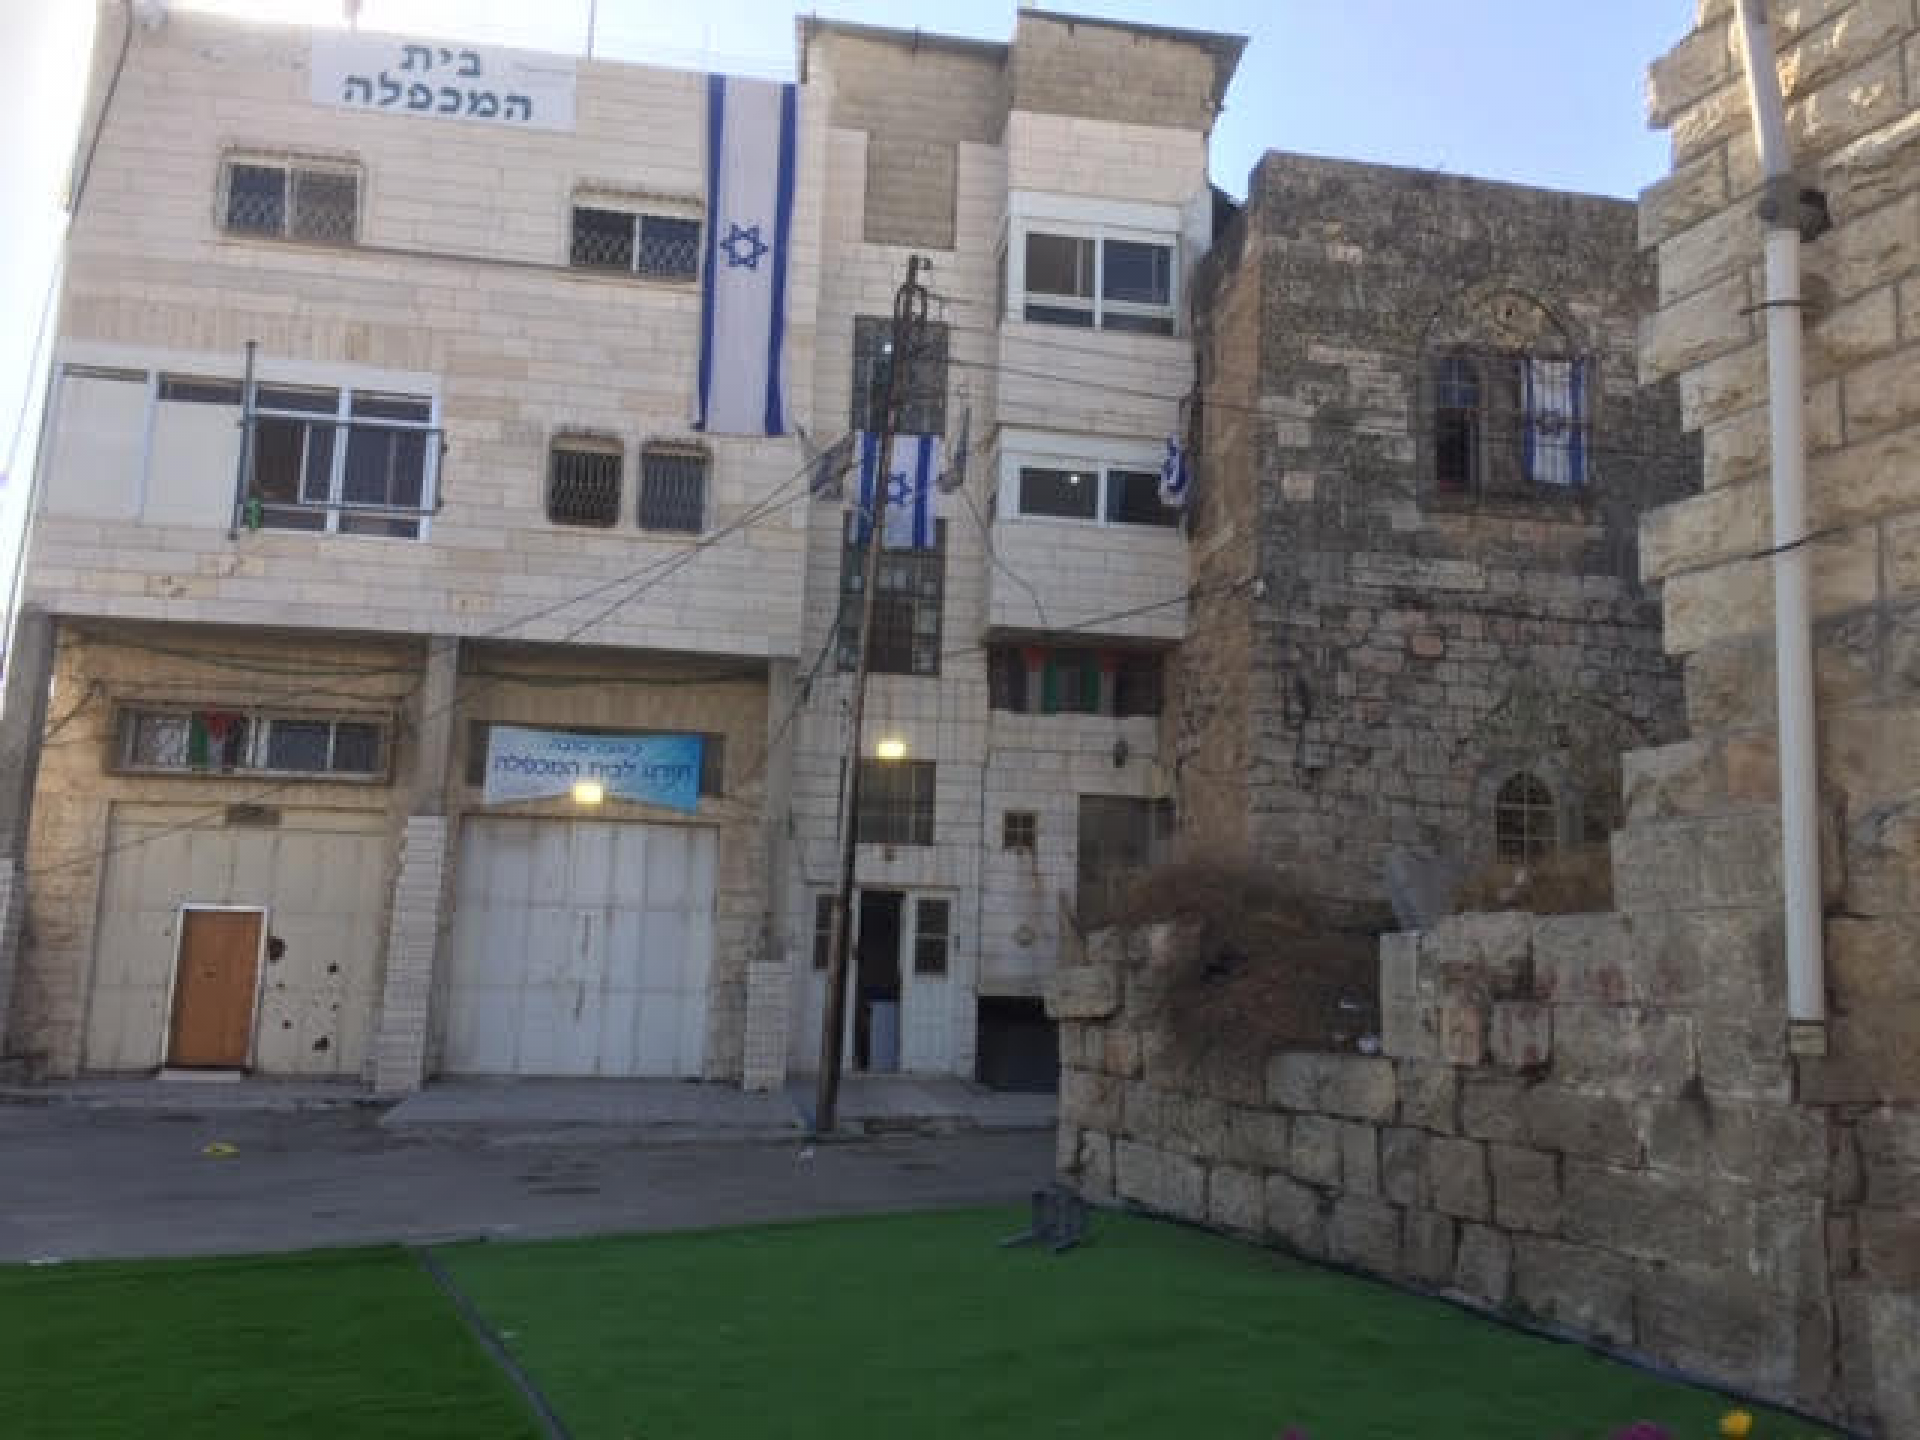 פתאום אבחנו בעוד דגל ישראל בבניין שנדמה לנו שאין אישור קנייה